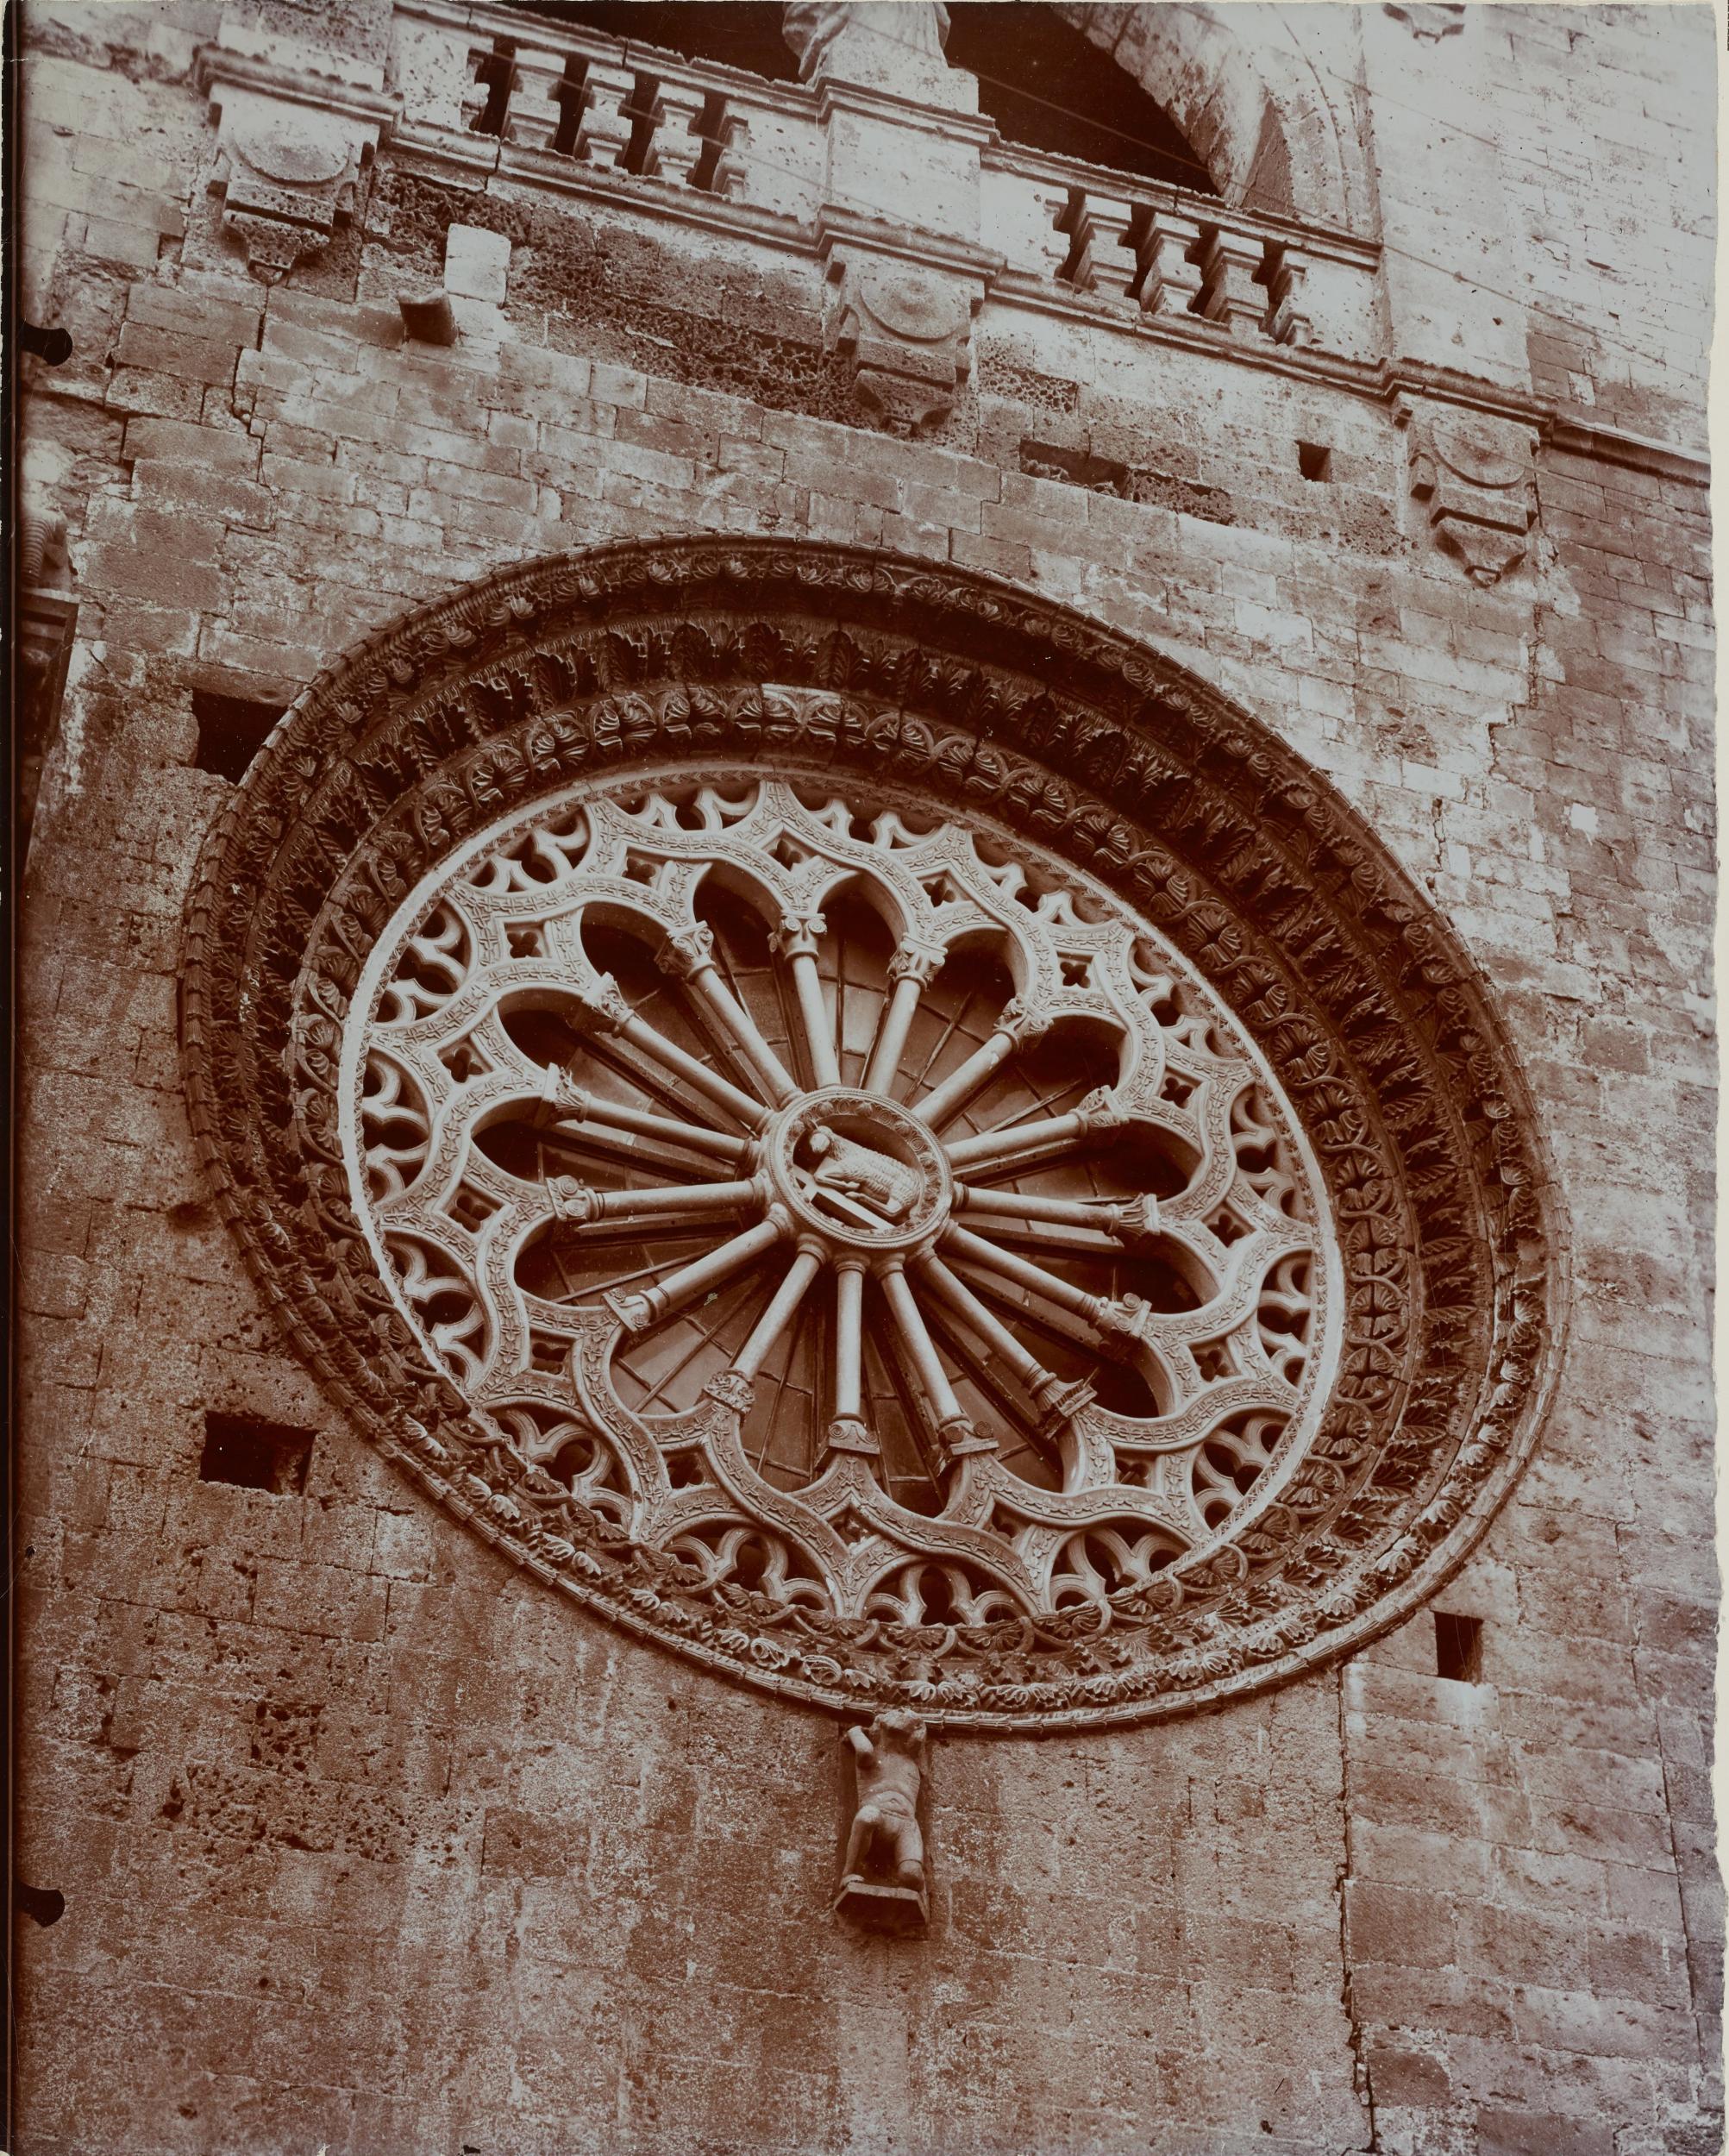 Fotografo non identificato, Altamura - Cattedrale di S. Maria Assunta, facciata e rosone, 1951-2000, albumina/carta, MPI130834